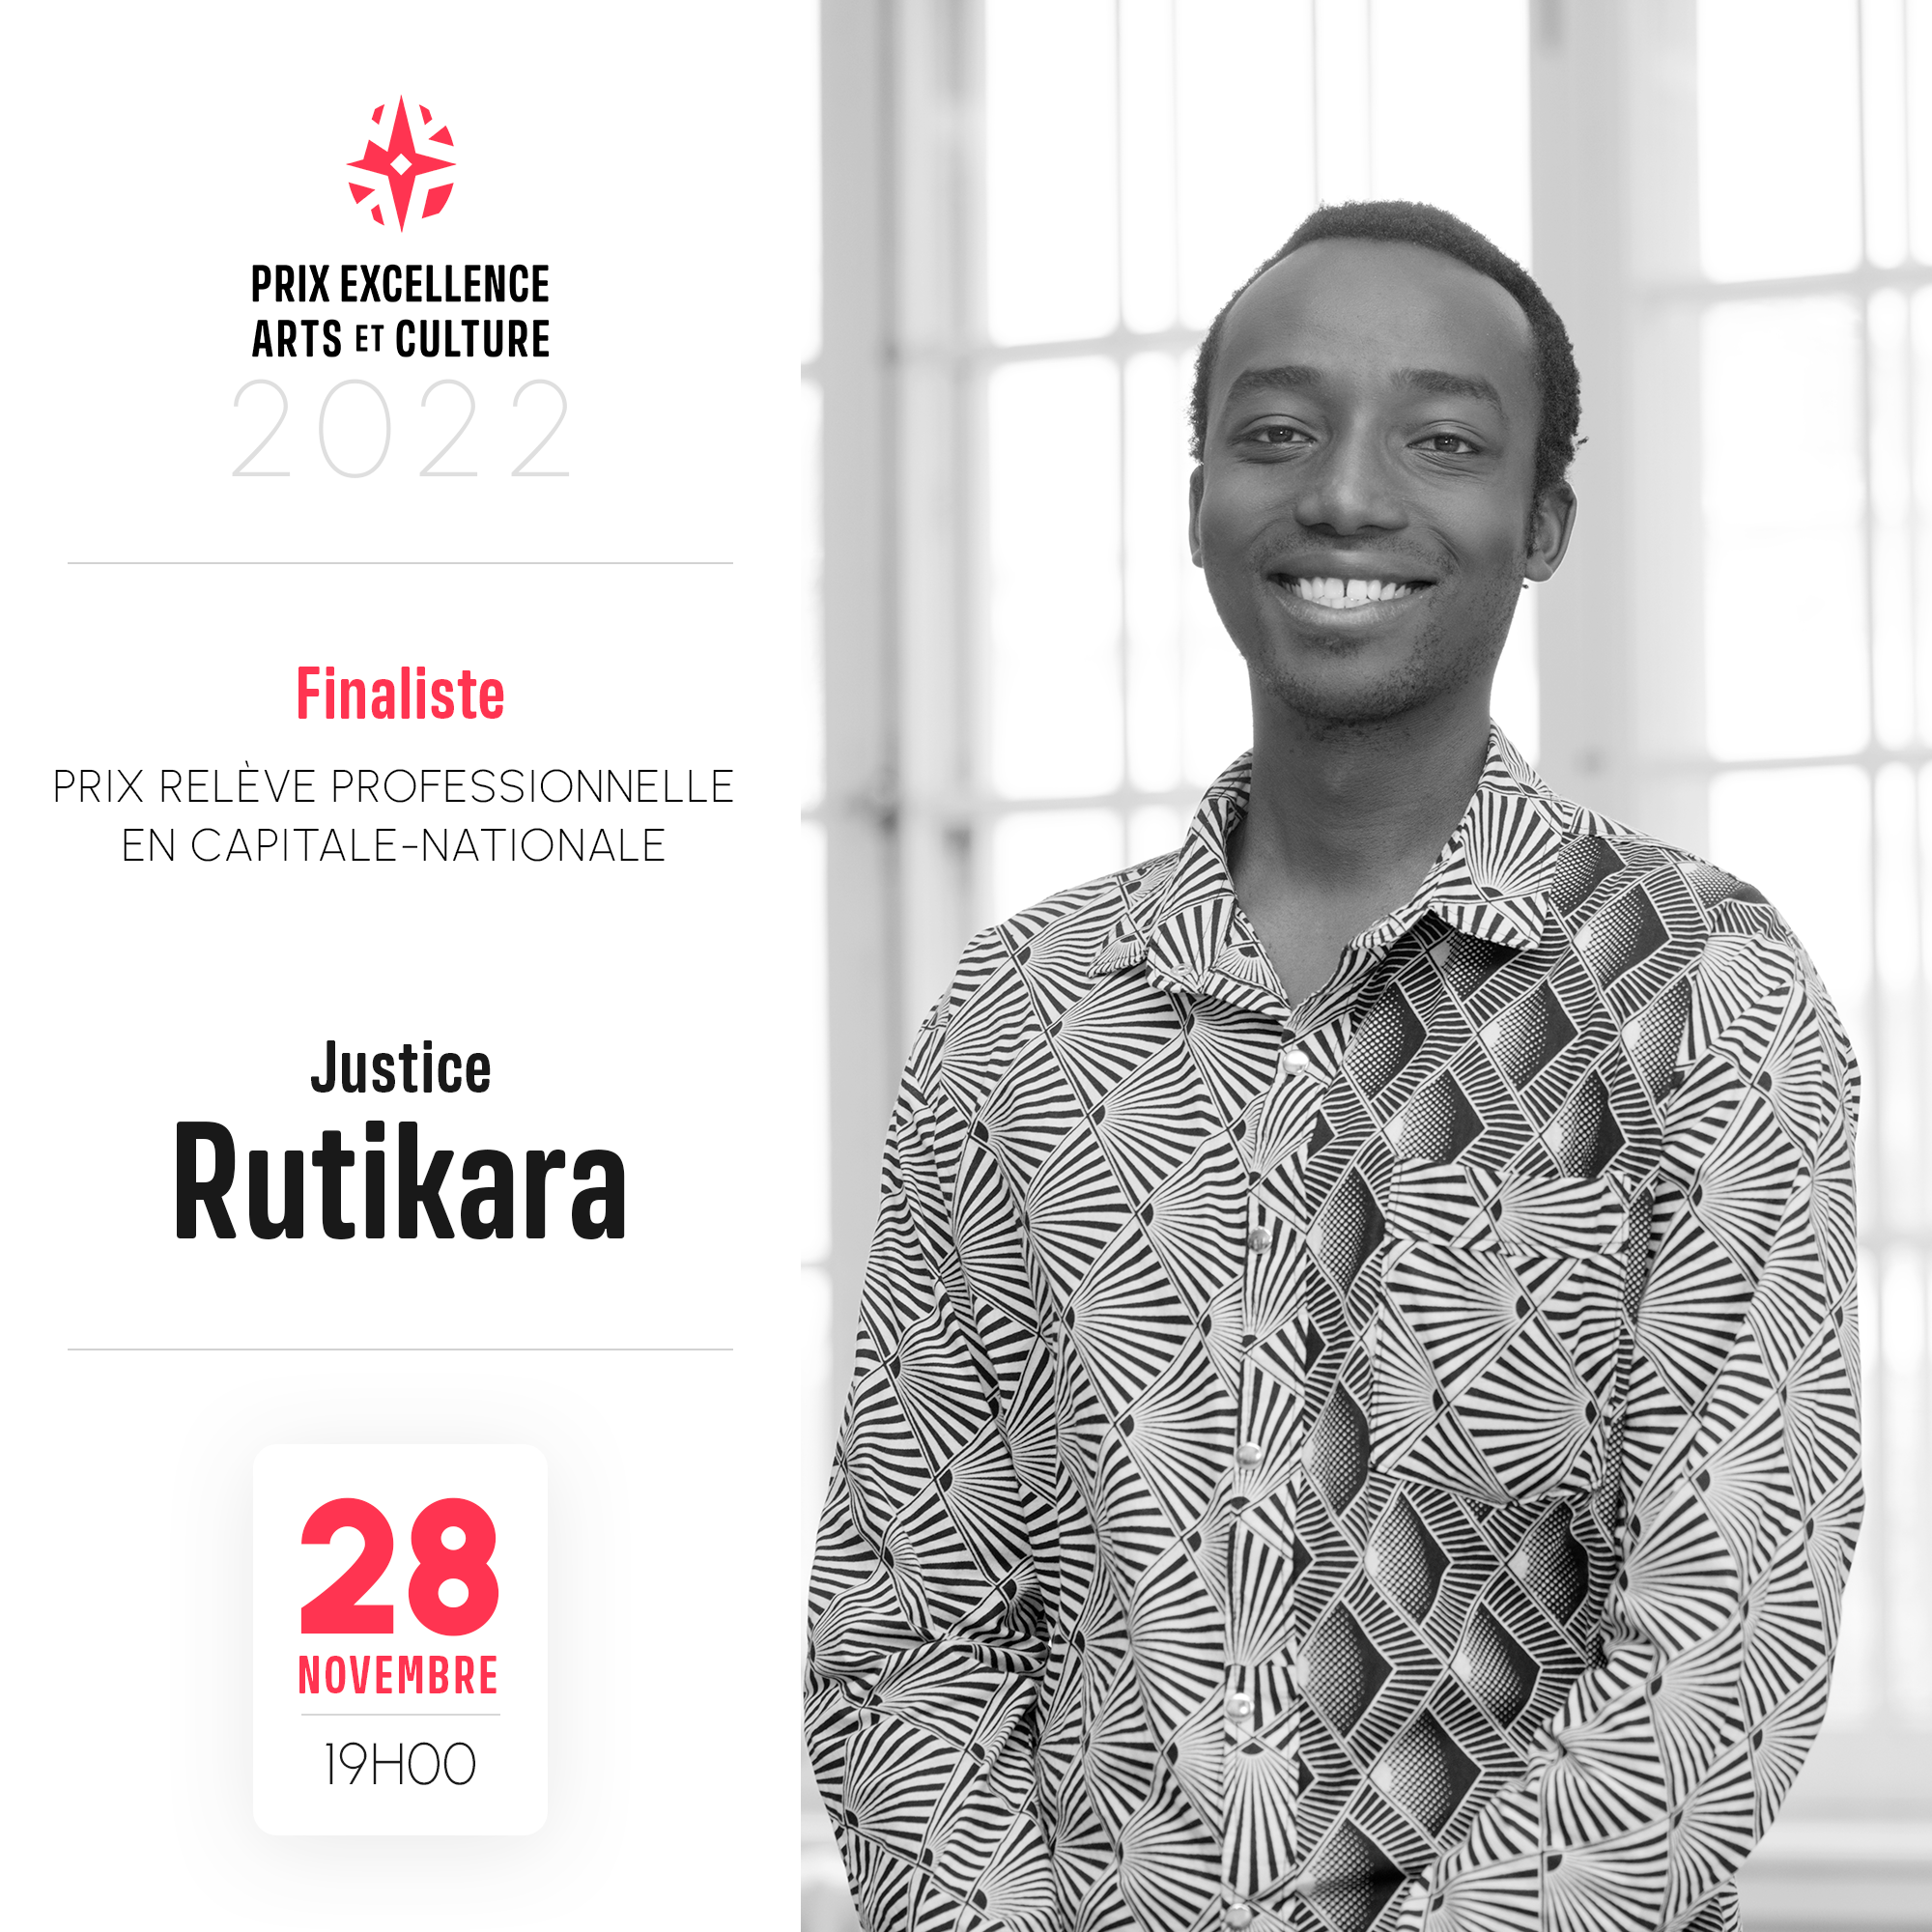 Justice Rutikara